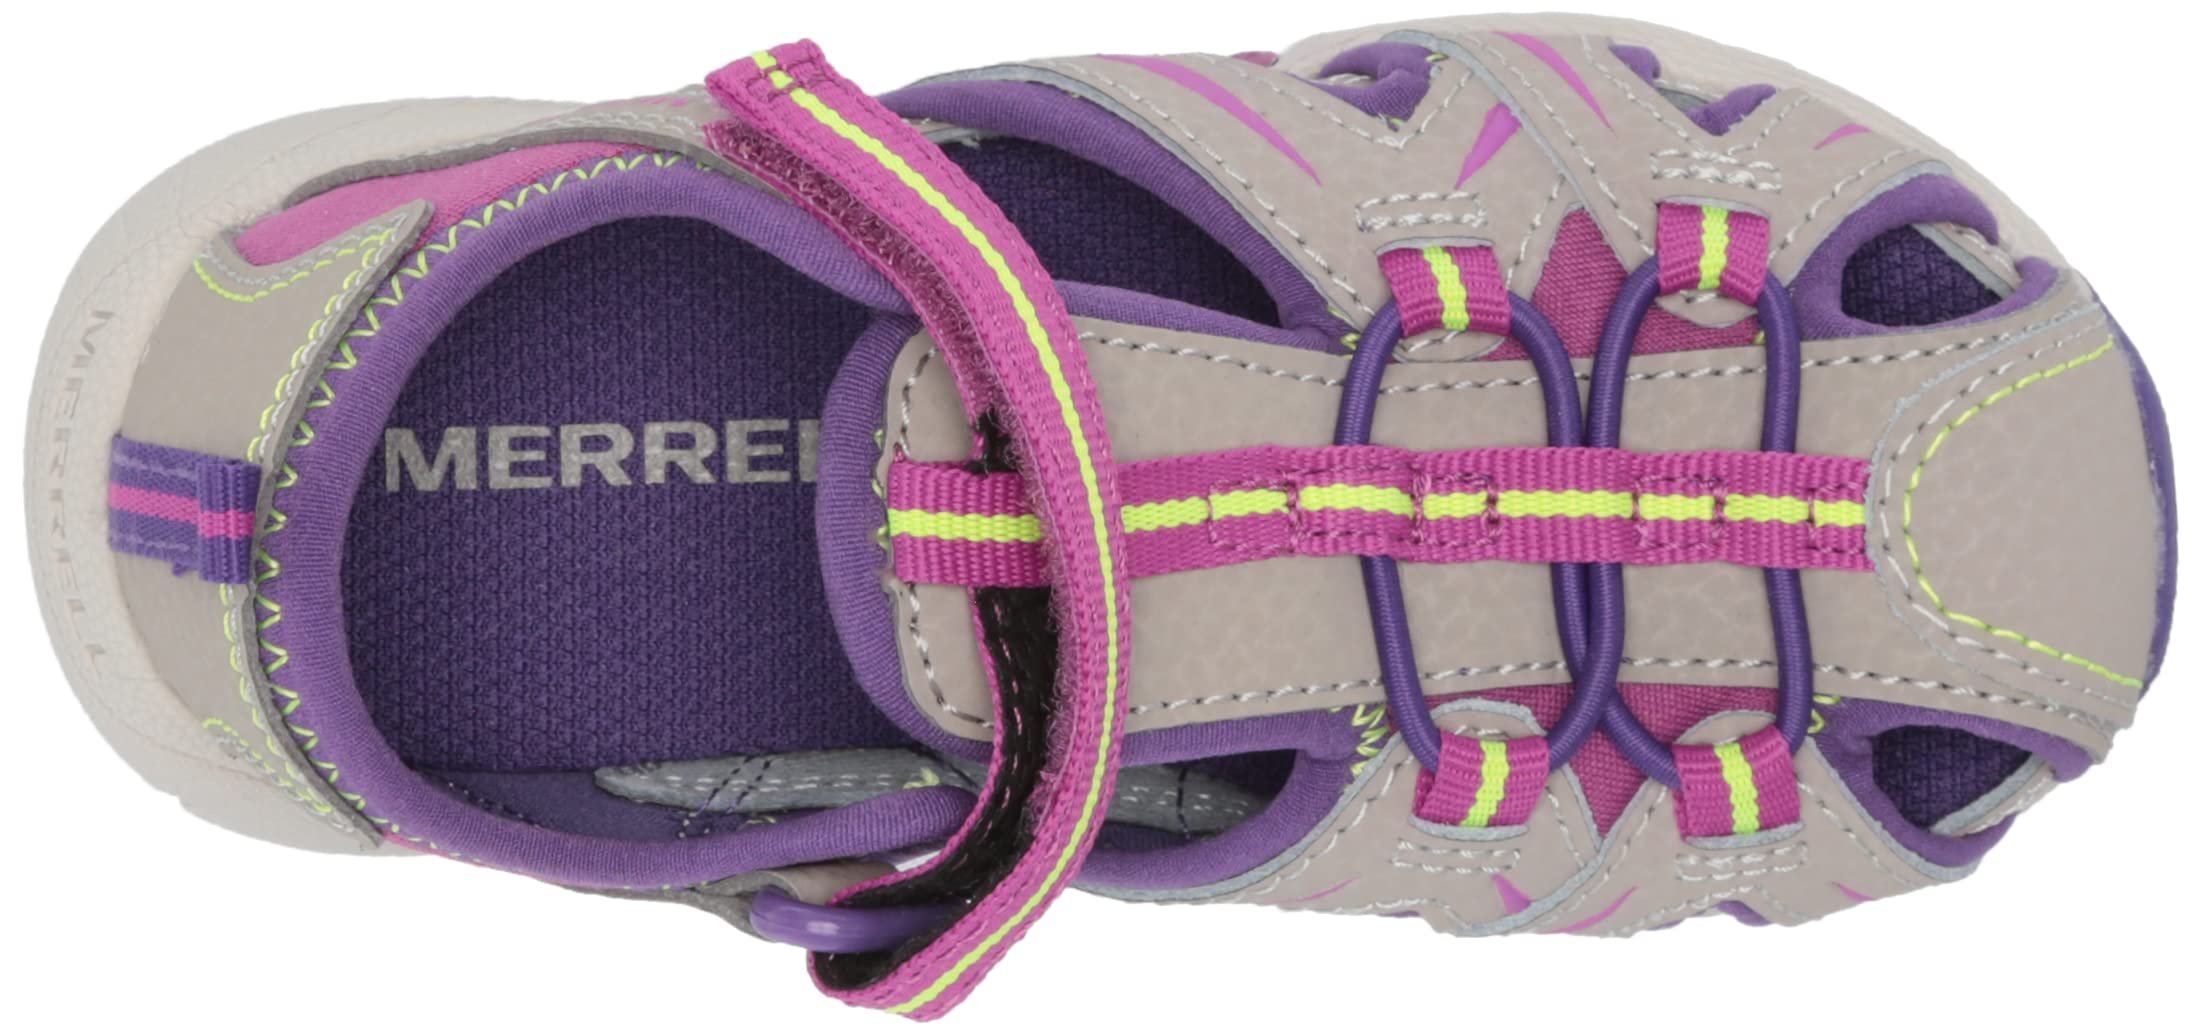 Merrell Unisex-Child Hydro Jr Sport Sandal